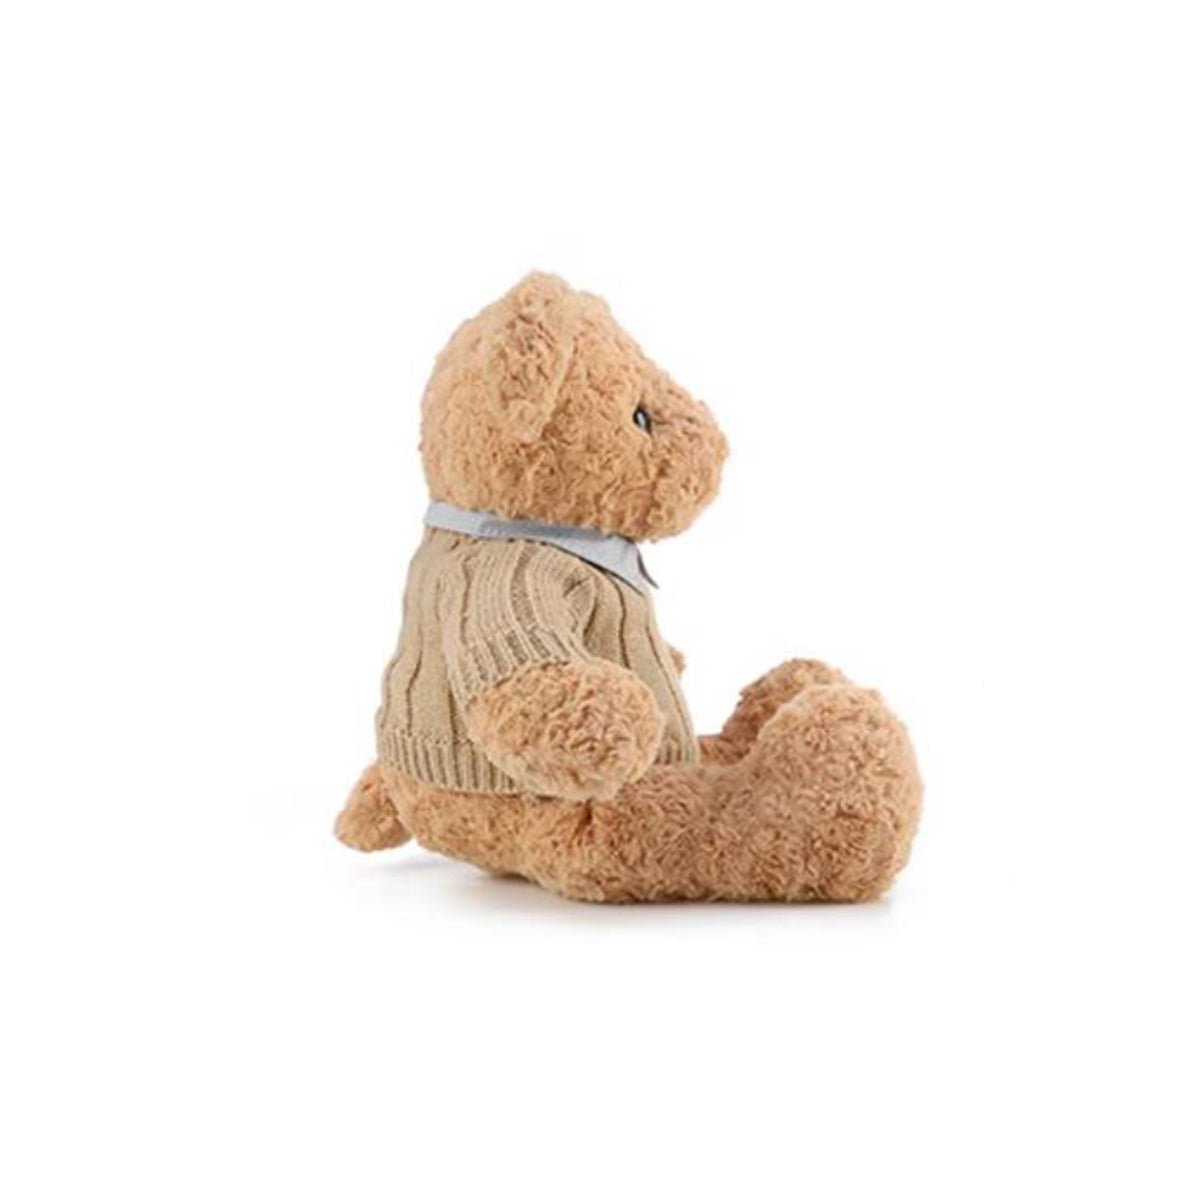 Mr. Bear Mocha Plush Doll - 0cm